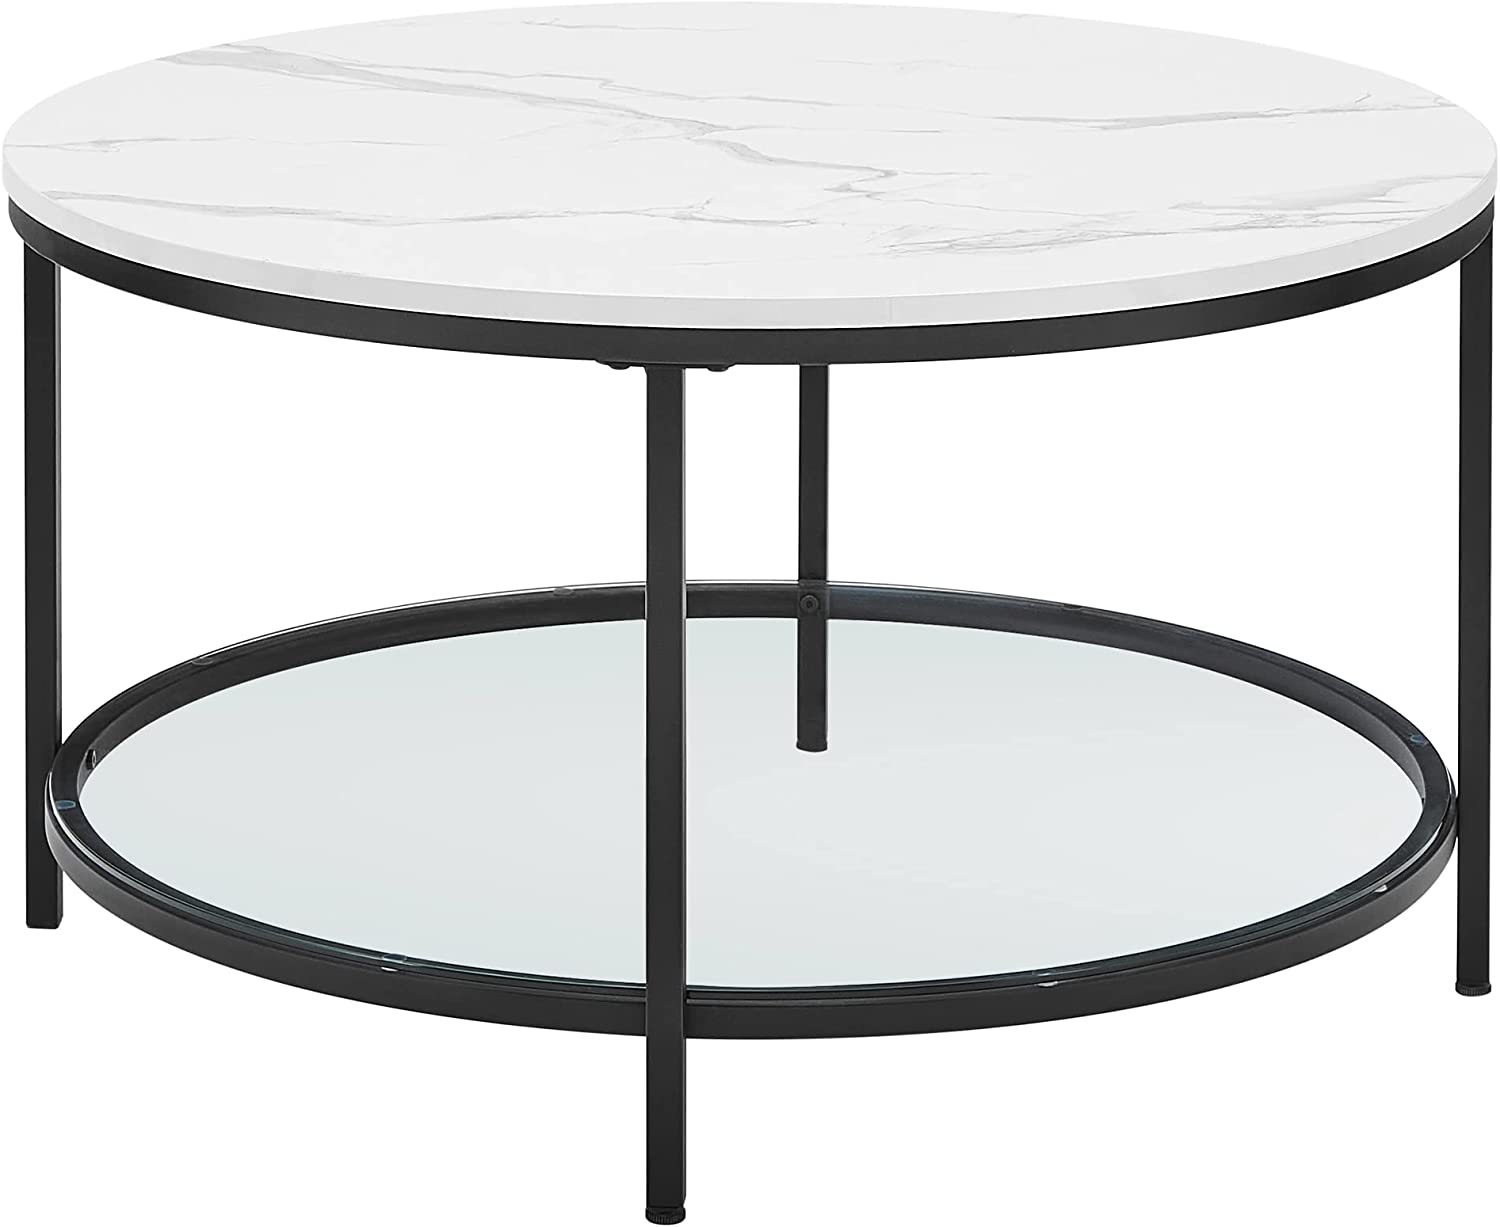 VASAGLE LCT071B13 Sofabord, stuebord, sofabord, med glasplade, stor opbevaringsplads, nem montering, moderne stil, hvid marmoreffekt, sort stel